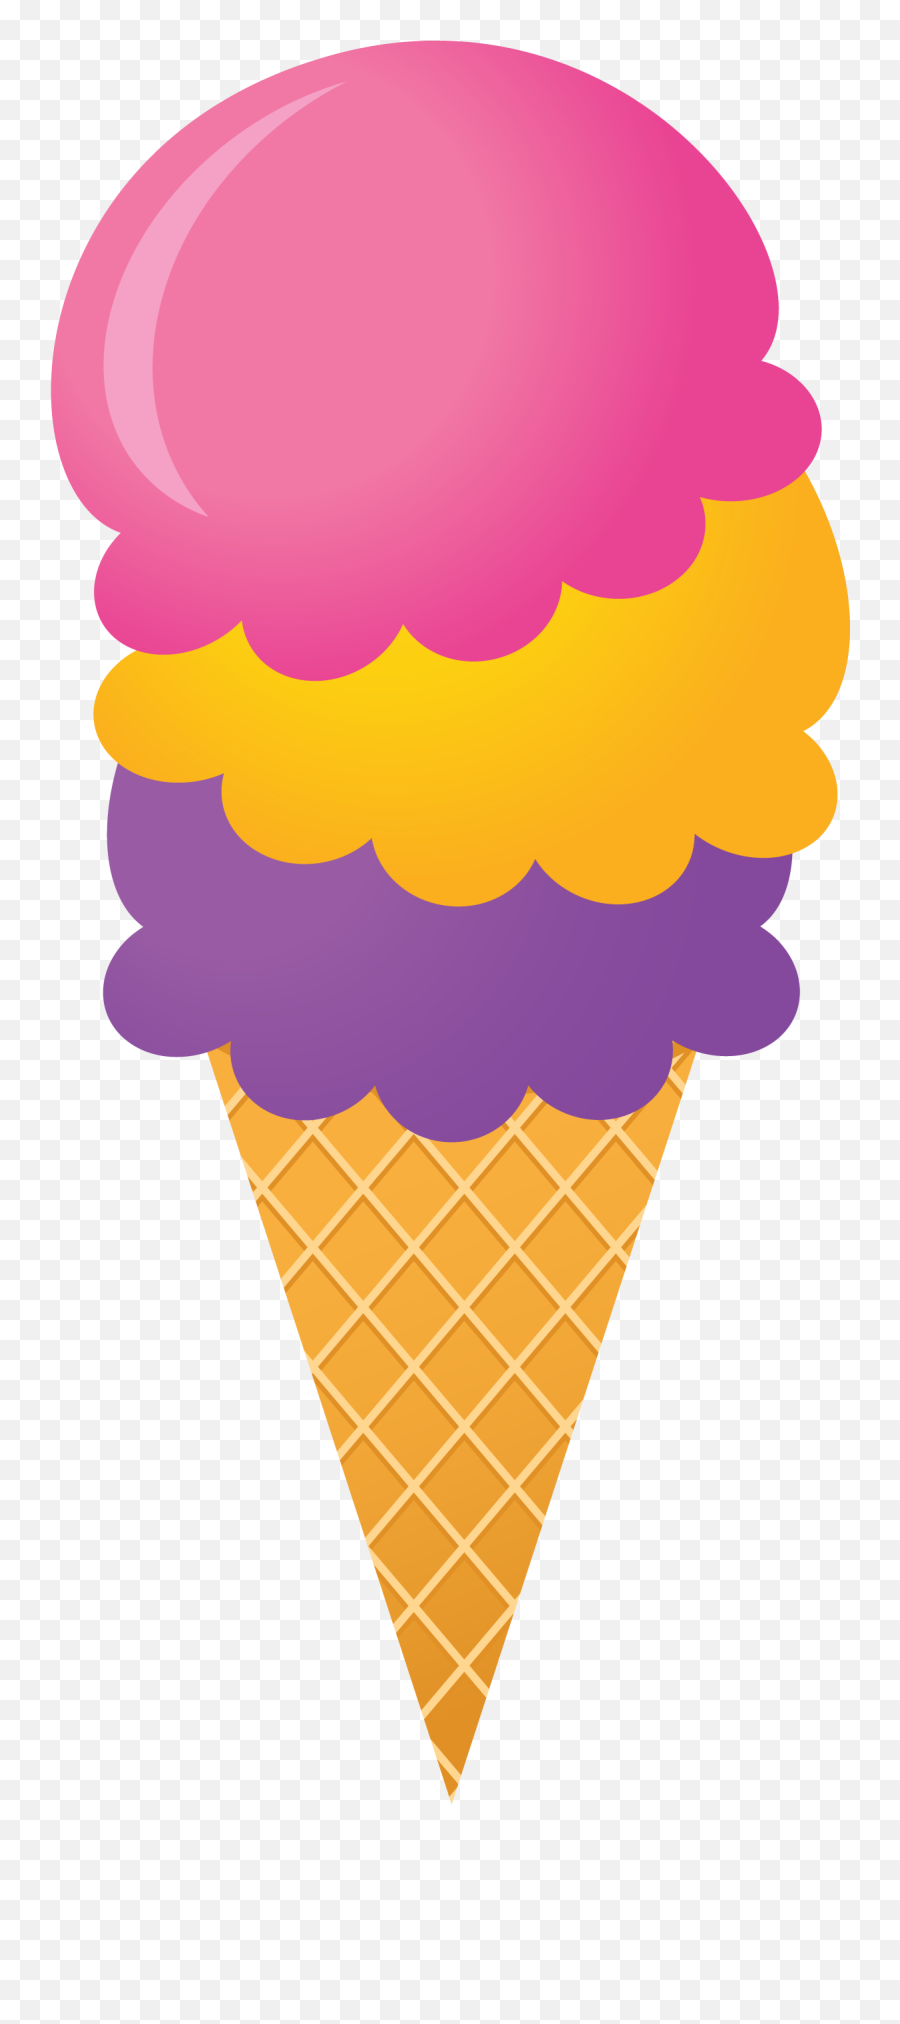 Clipart Shapes Ice Cream Clipart Shapes Ice Cream - Ice Cream Clipart Kids Emoji,Ice Cream Scoop Clipart